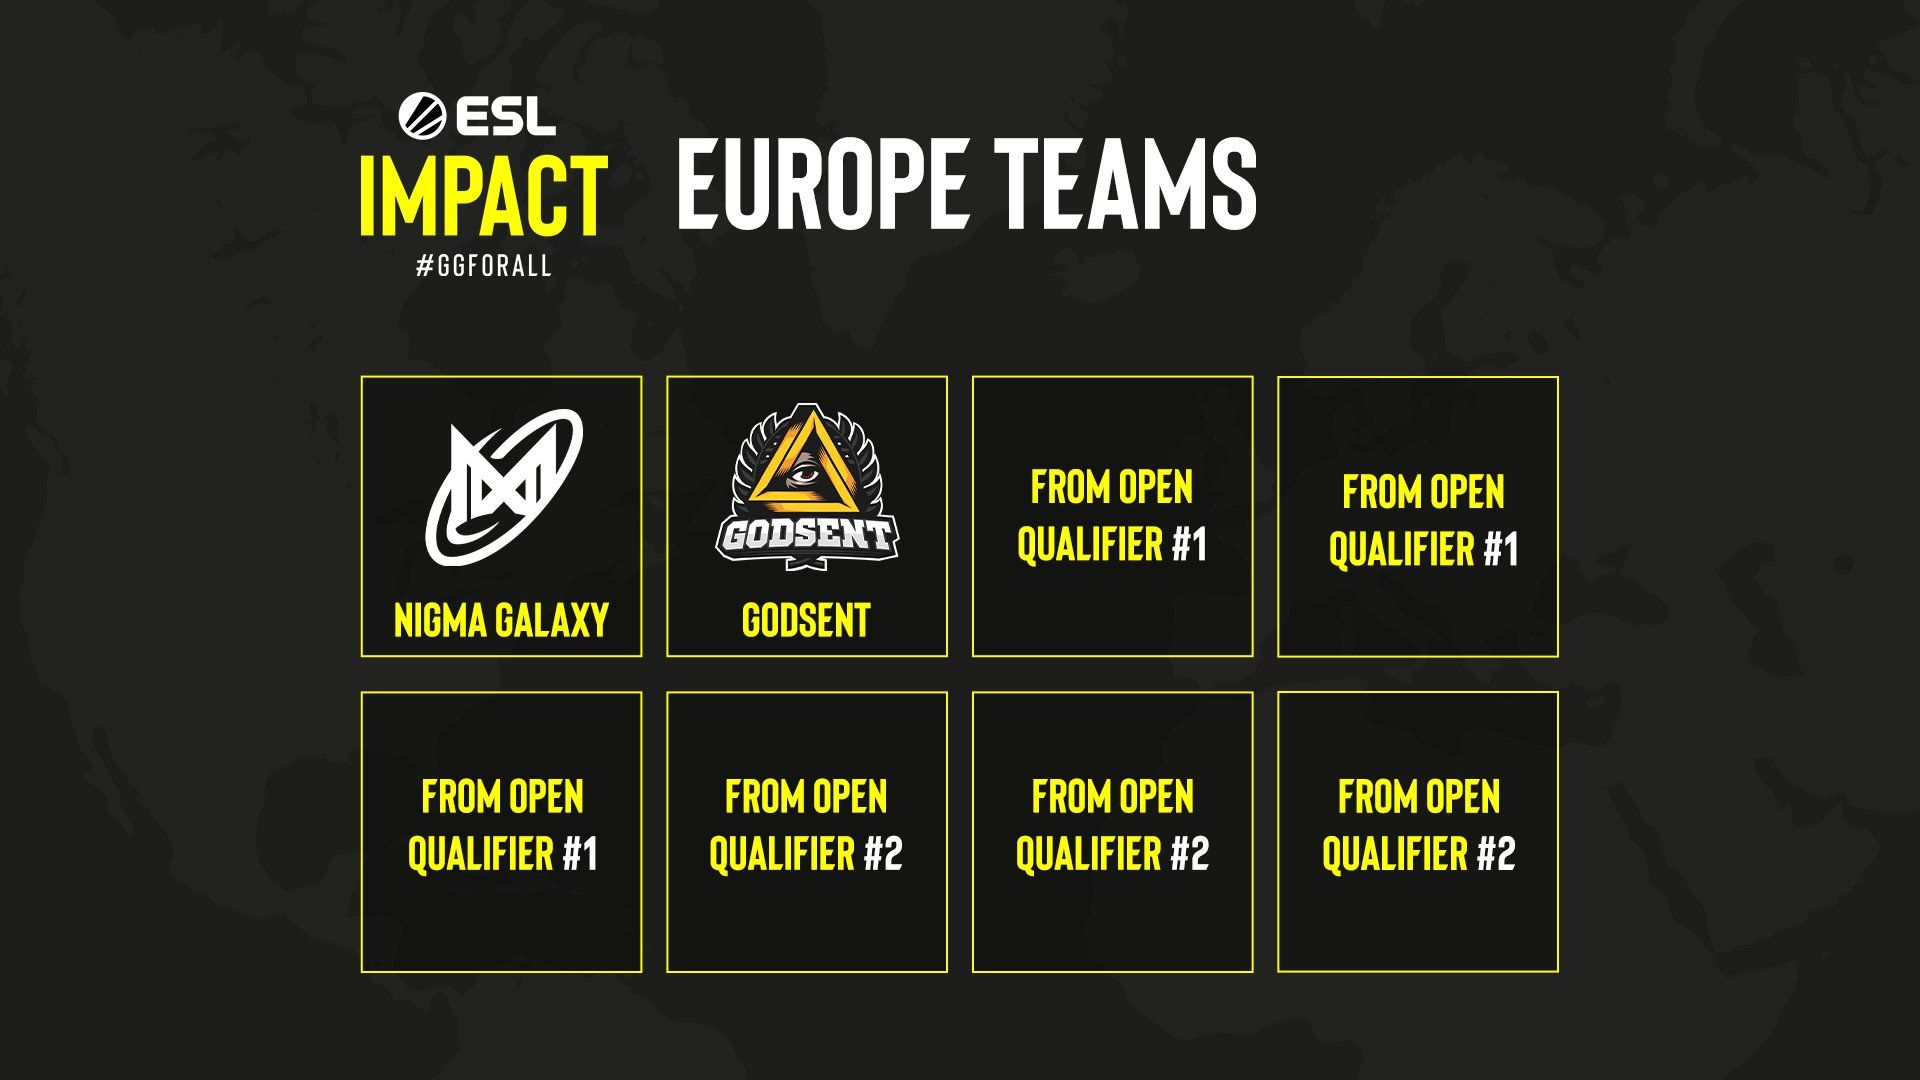 Участники ESL Impact League для Европы.
Источник: ESL